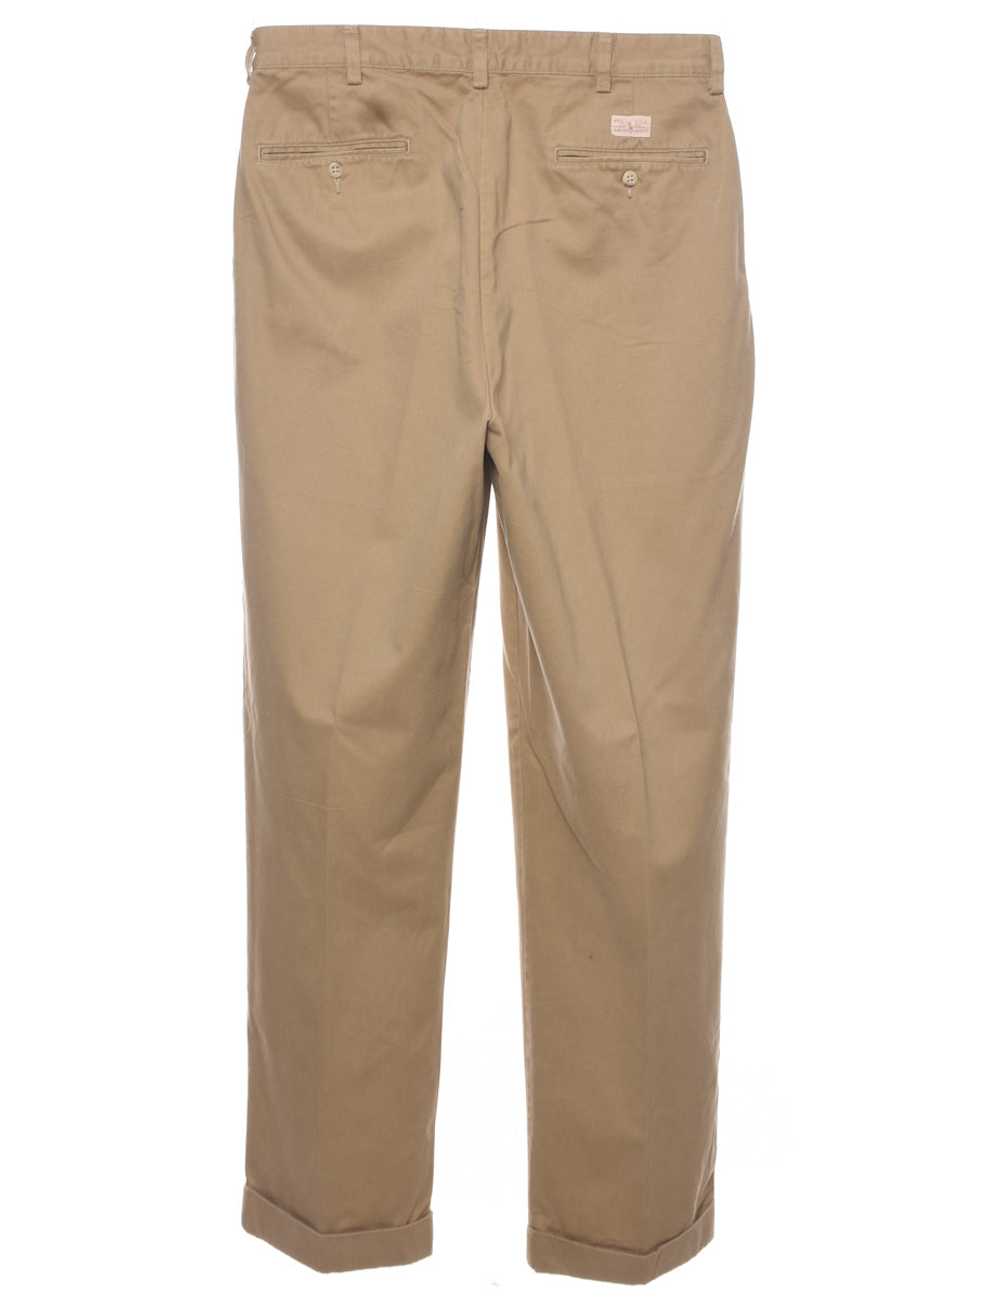 Ralph Lauren Trousers - W34 L32 - image 2